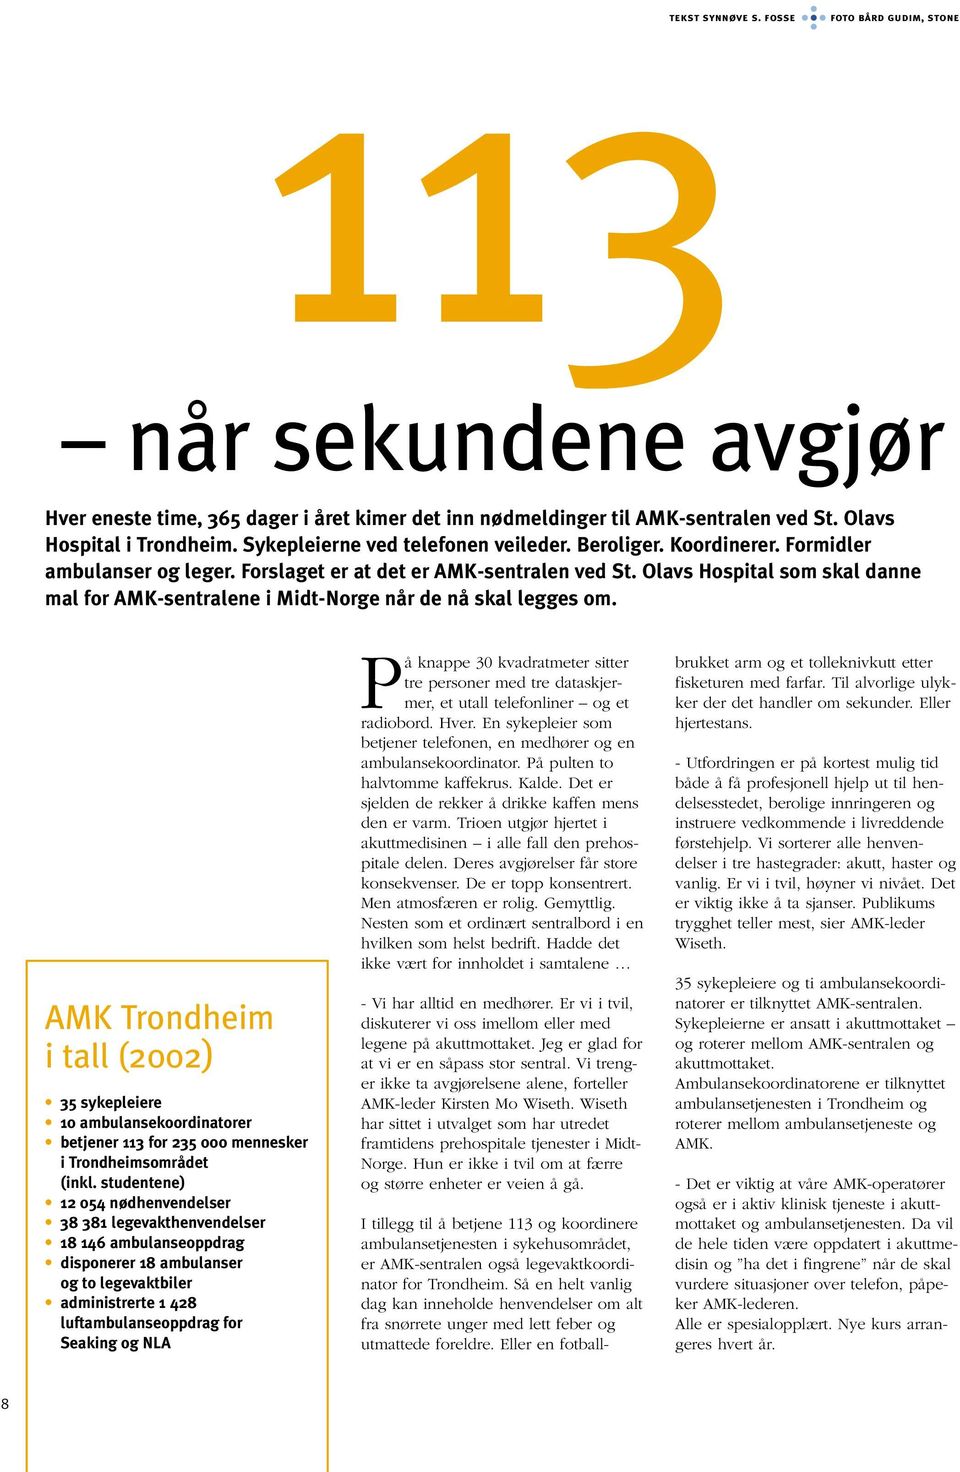 Olavs Hospital som skal danne mal for AMK-sentralene i Midt-Norge når de nå skal legges om.